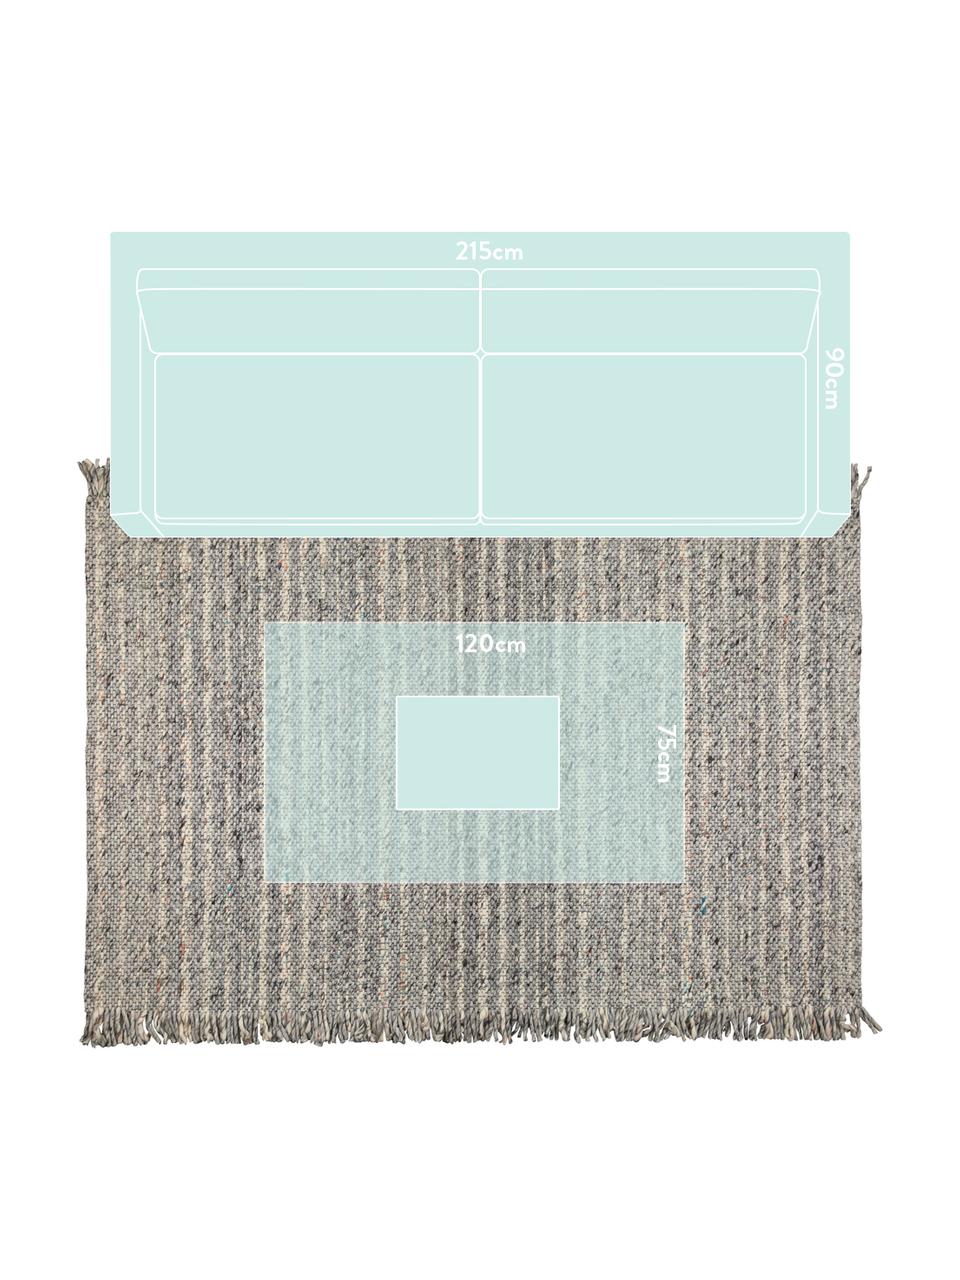 Wollteppich Frills in Grau/Beige mit Fransen, 170 x 240 cm, Flor: 100% Wolle, Grautöne, Beige, B 170 x L 240 cm (Grösse M)